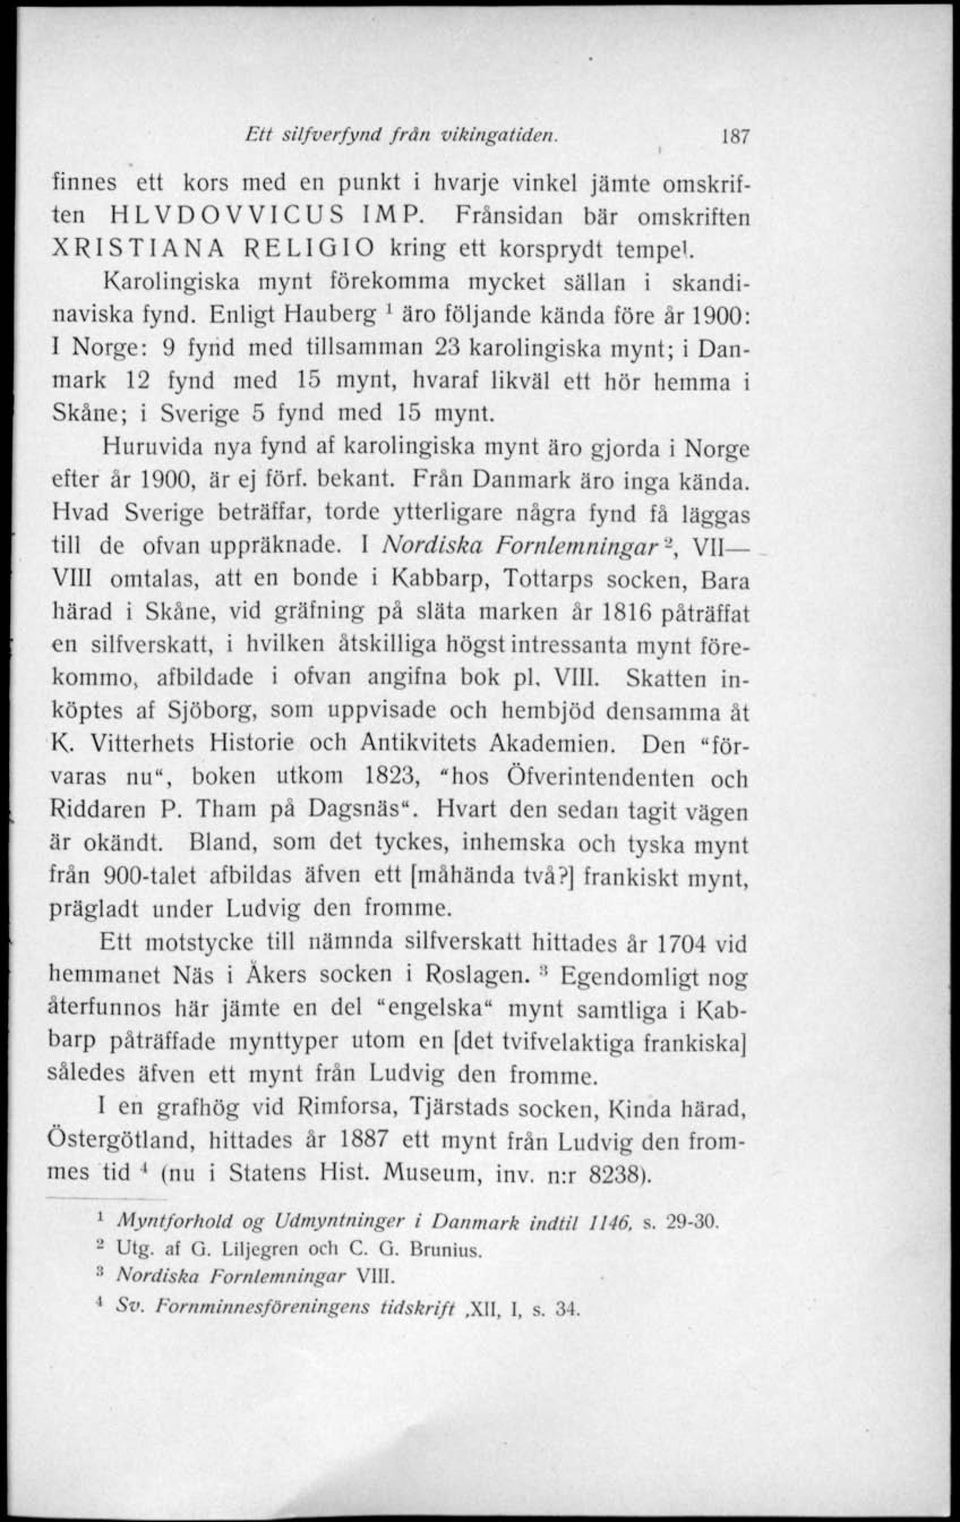 Enligt Hauberg ' äro följande kända före år 1900: I Norge: 9 fynd med tillsamman 23 karolingiska mynt; i Danmark 12 fynd med 15 mynt, hvaraf likväl ett hör hemma i Skåne; i Sverige 5 fynd med 15 mynt.